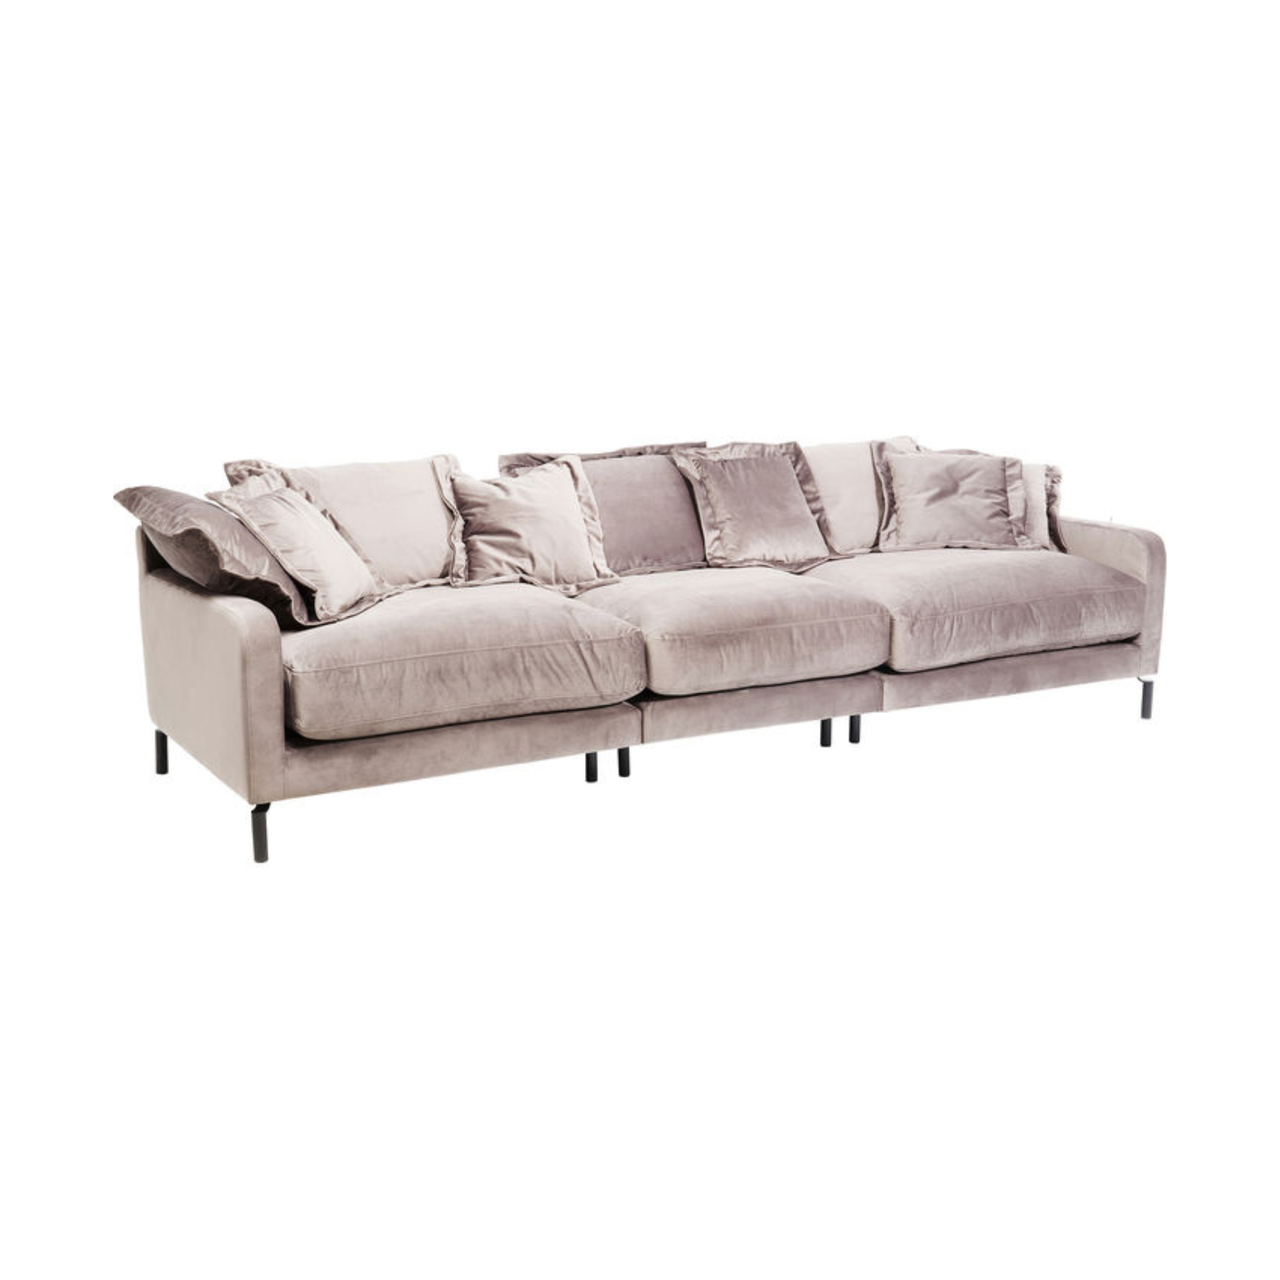 Дизайнерський диван стильний м'який шестимісний MeBelle KAMAL+ 3 м у вітальню, бежево-сірий велюр, ар-деко